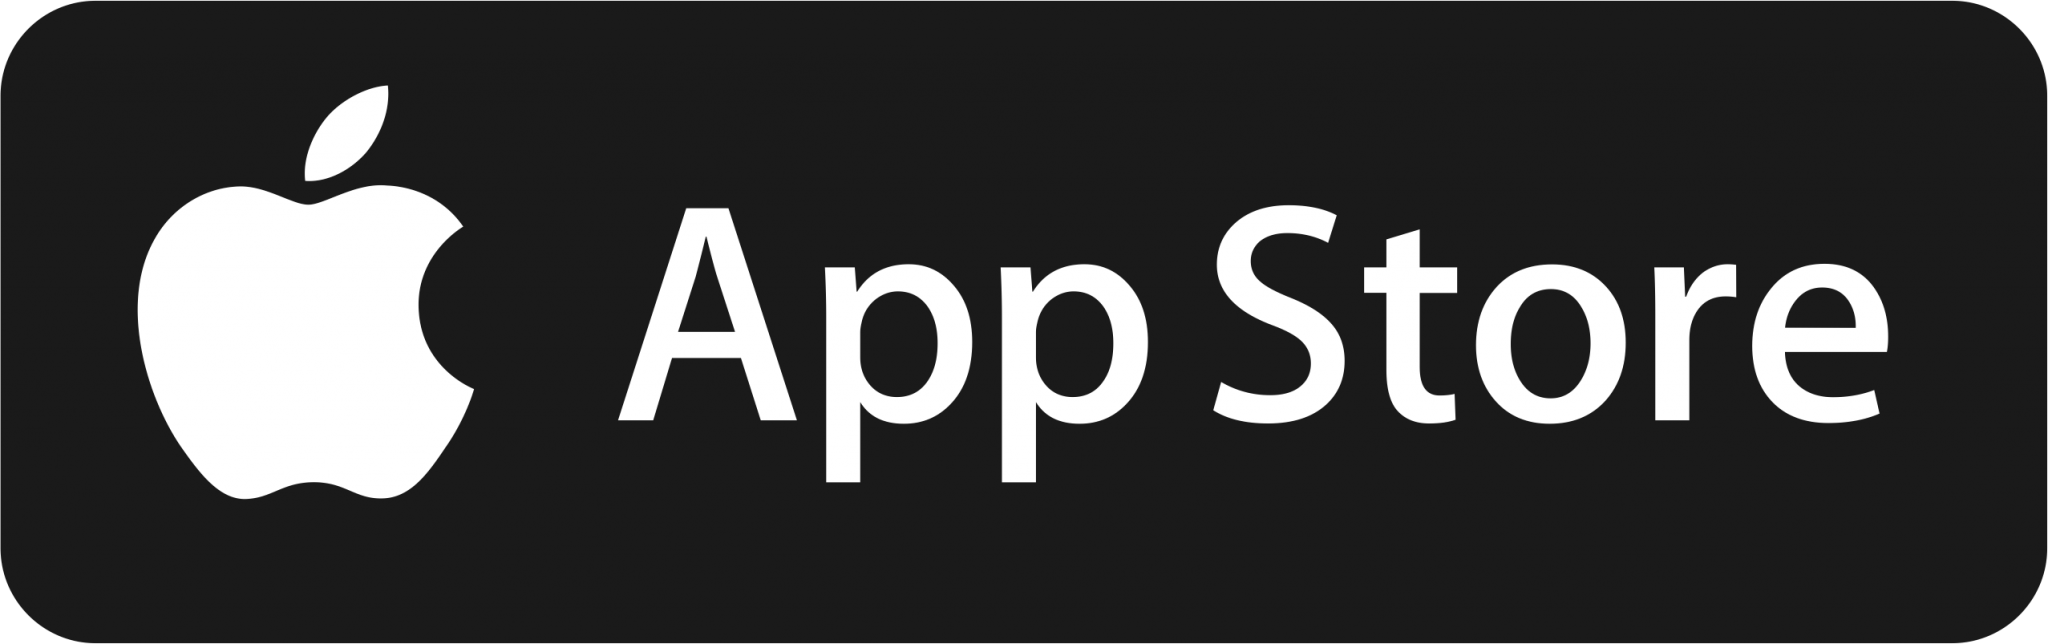 Apple Store приложение. APPSTORE иконка. Apple Store логотип. Аpp ctore. Телефон эпл сторе